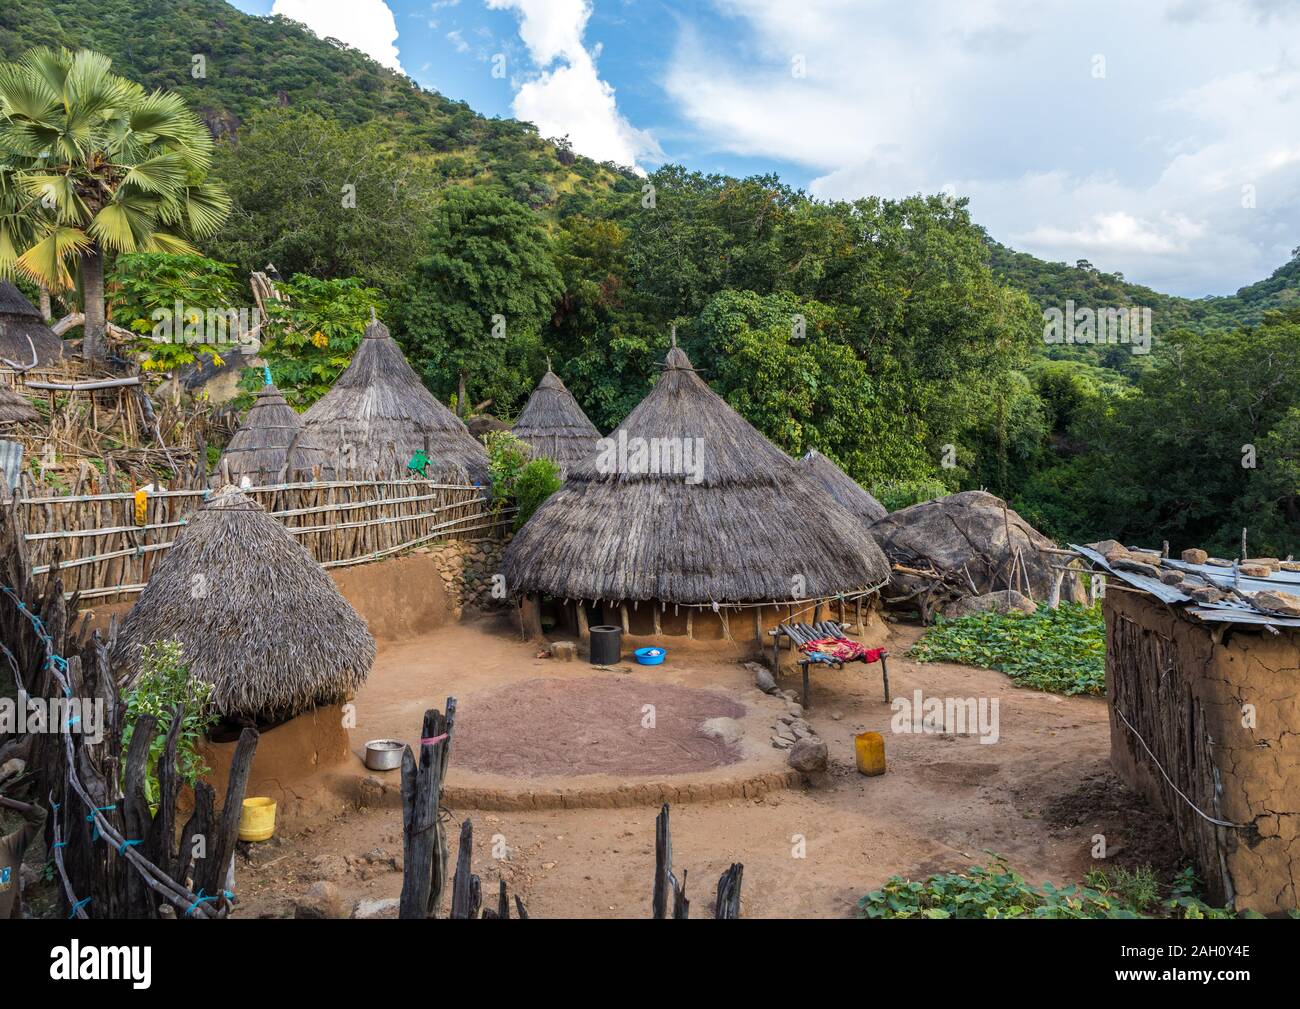 Lotuko Stamm Dorf mit reetgedeckten Häusern, Central Equatoria, Illeu, South Sudan Stockfoto